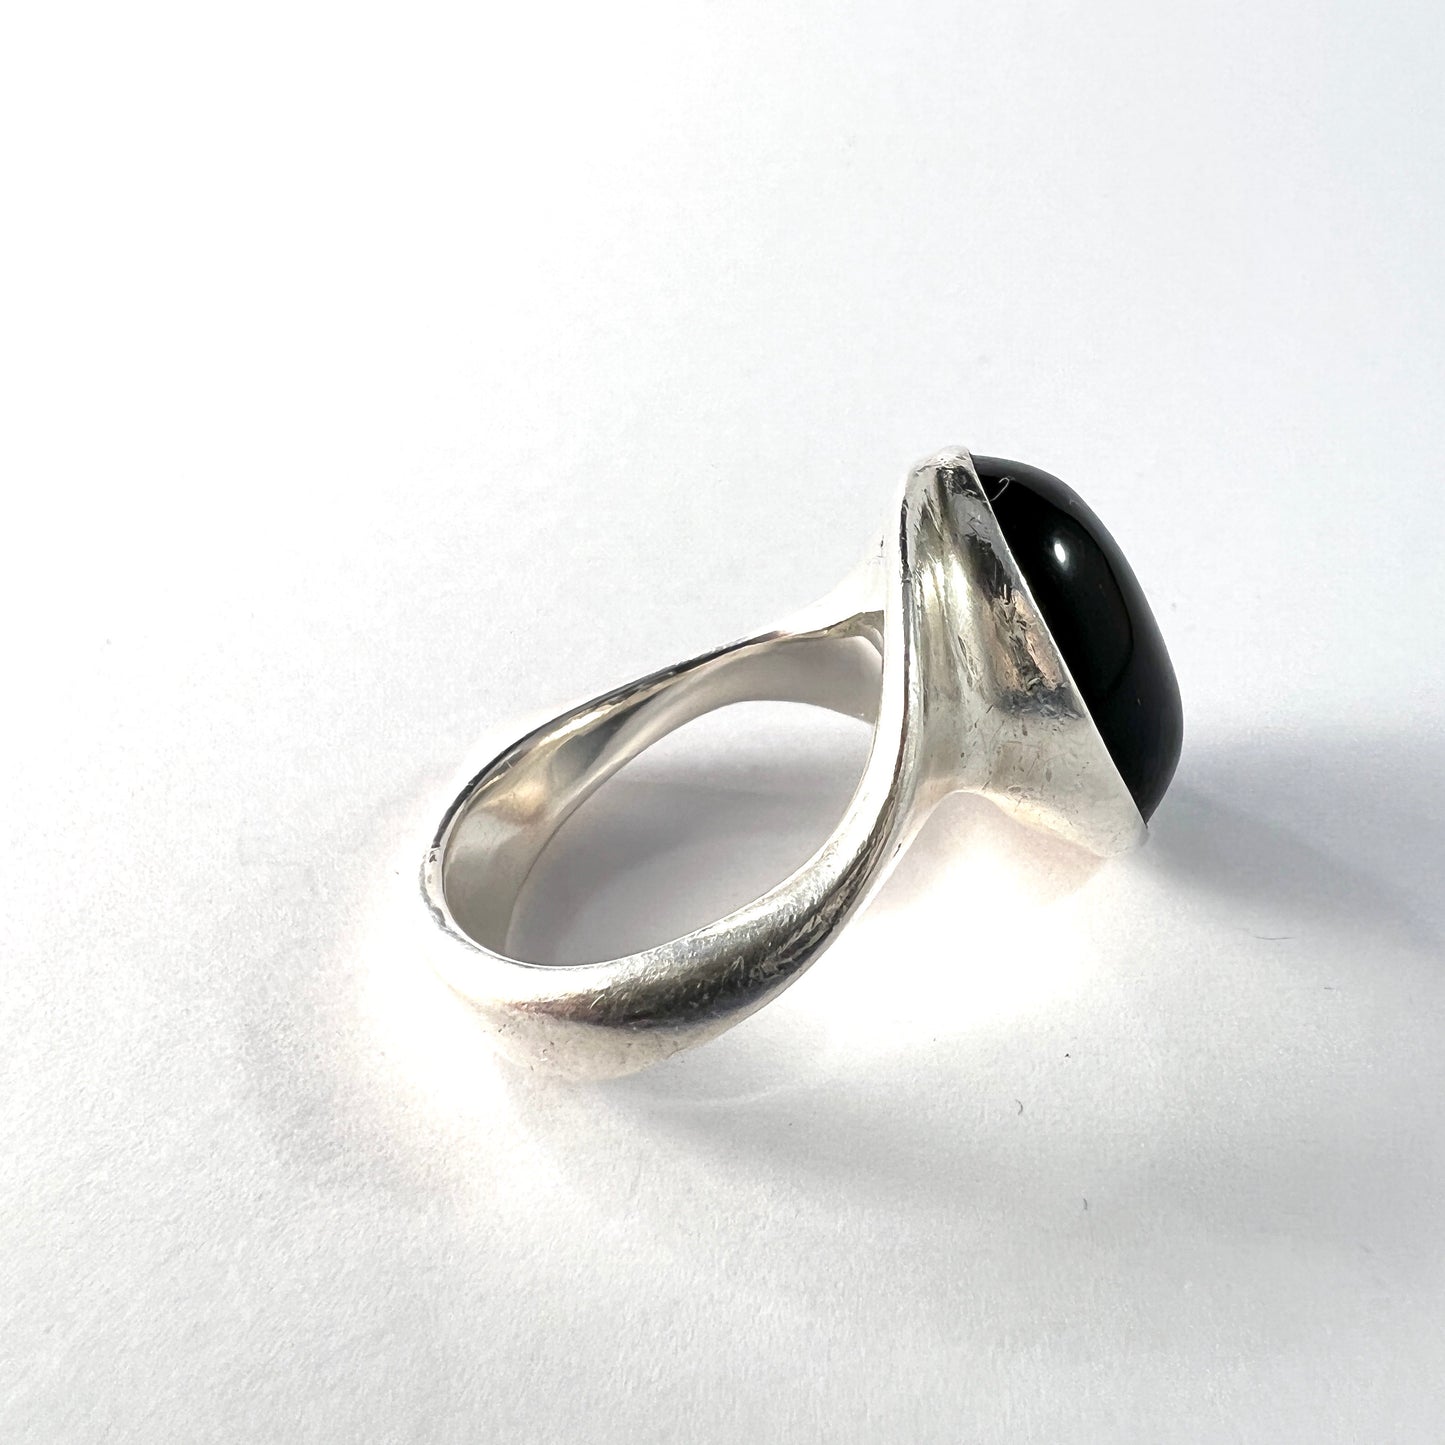 Hans Hansen, Denmark 1960s. Vintage Modernist Sterling Silver Onyx Ring.